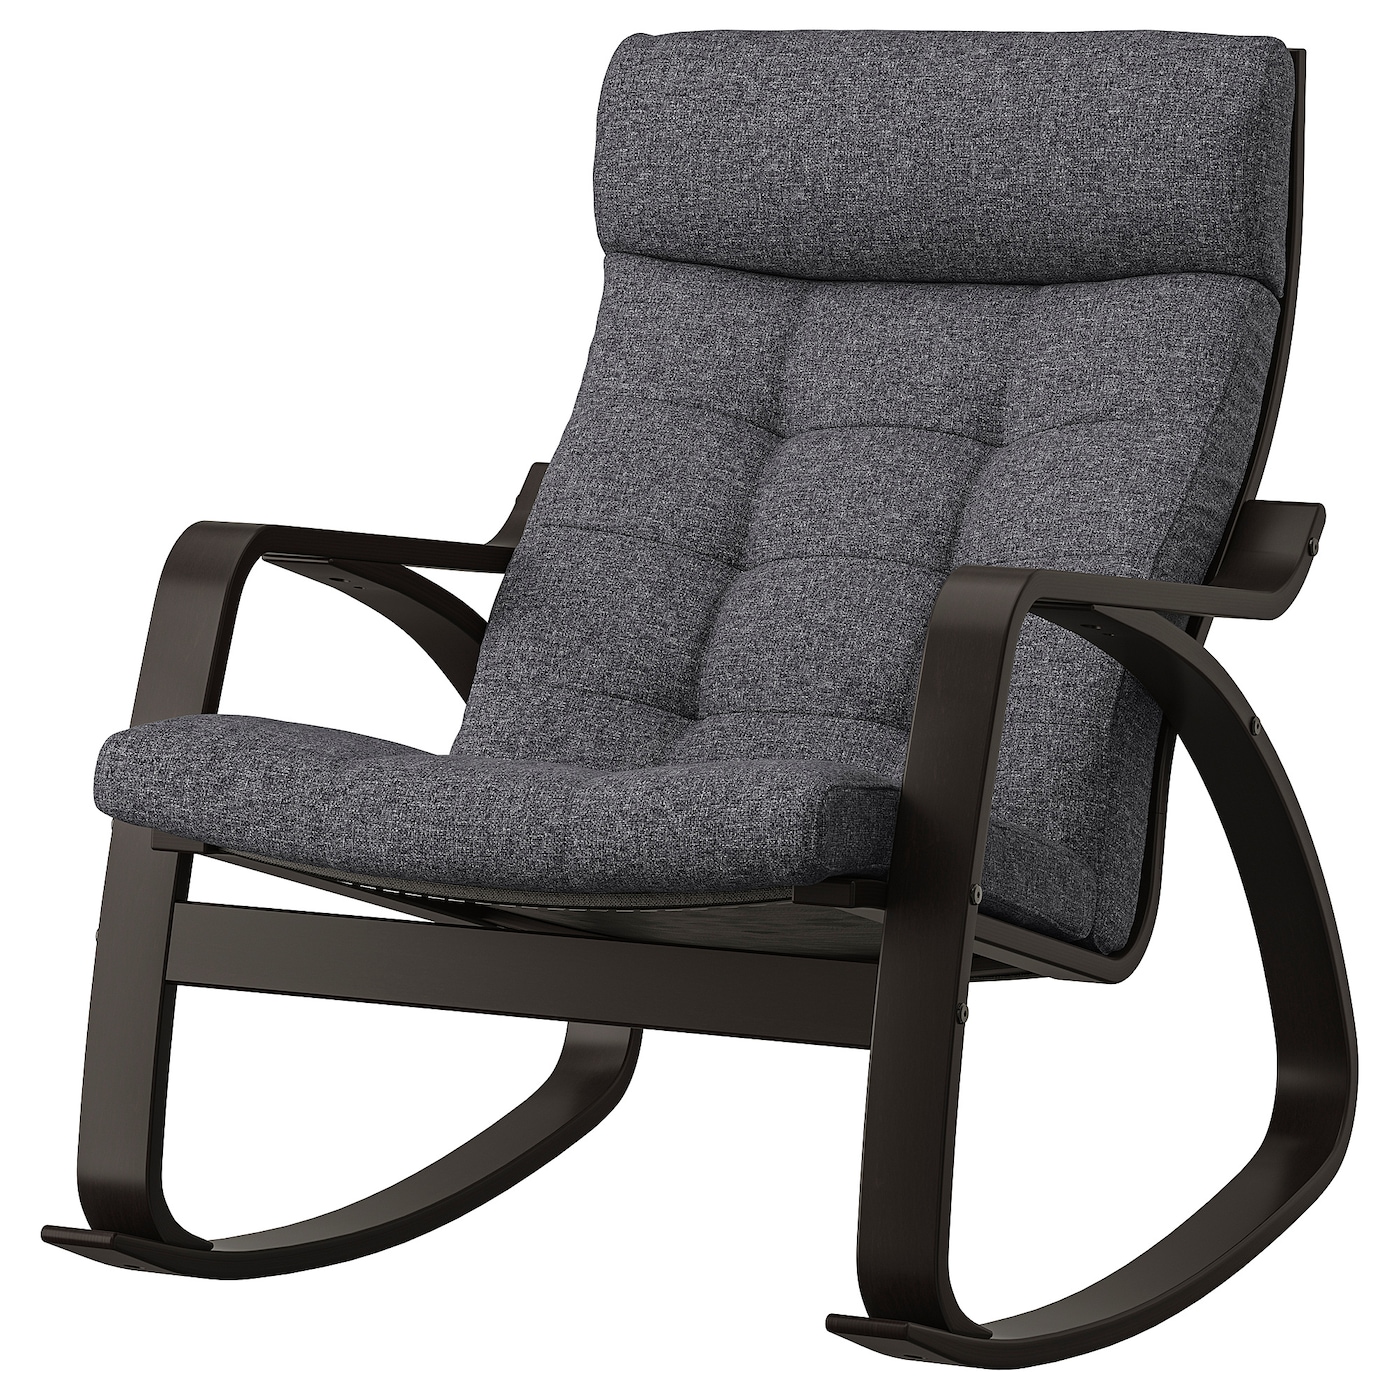 ПОЭНГ Кресло-качалка, черно-коричневый/Гуннаред темно-серый POÄNG IKEA электрическое кресло качалка детское умное кресло качалка с дистанционным управлением bluetooth удобная вибрация гипнотическое средство дл